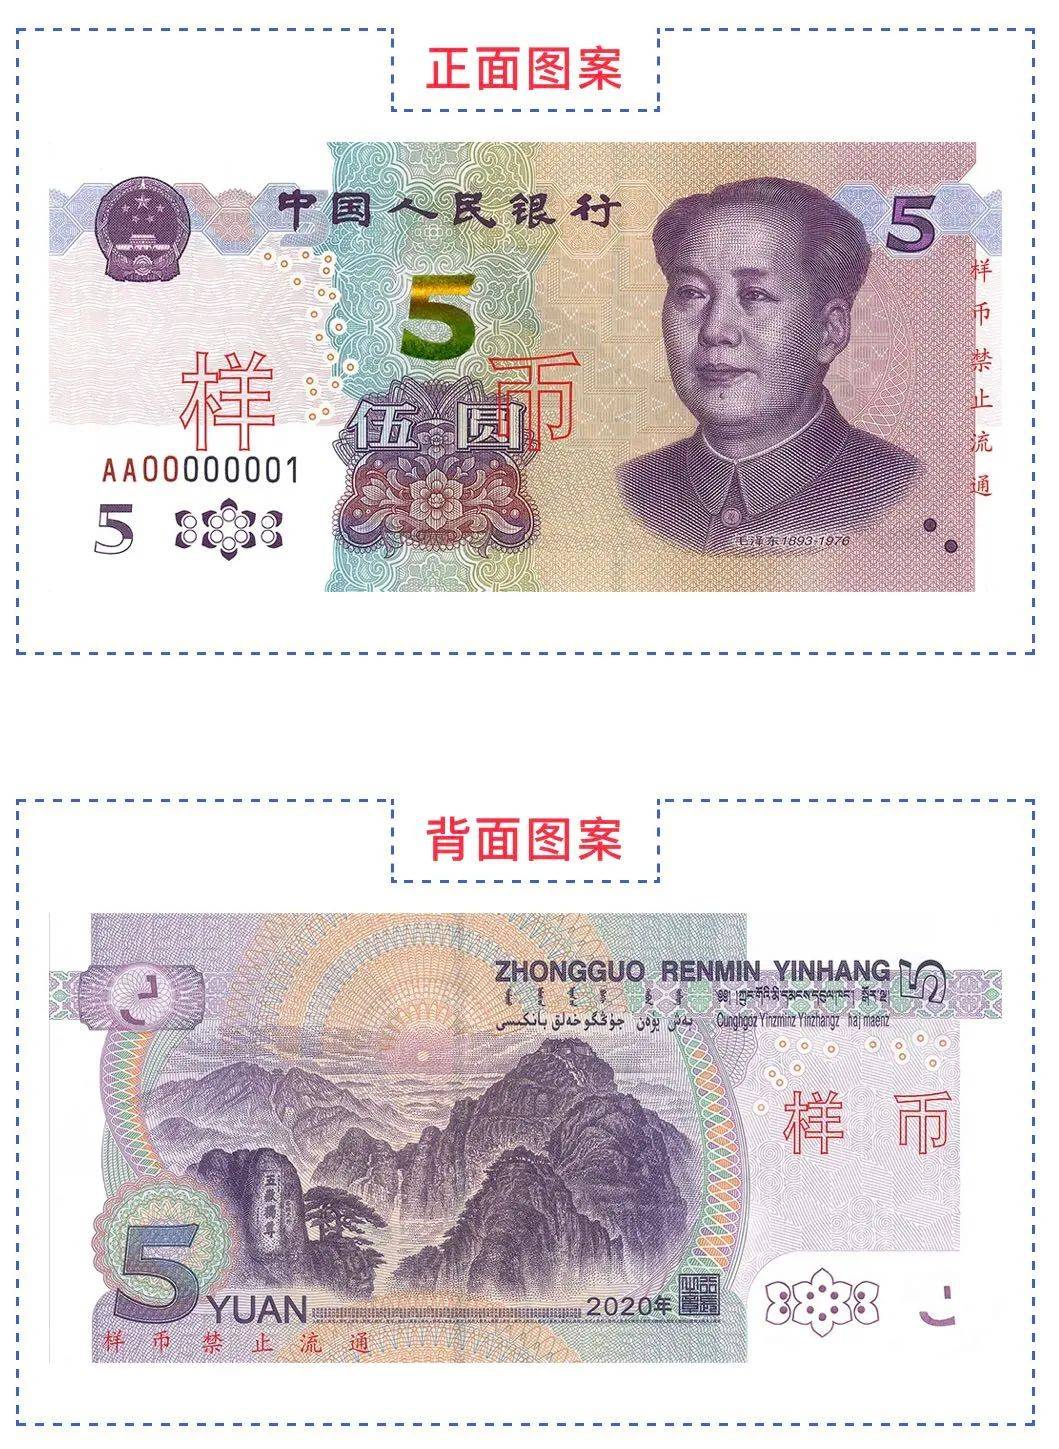 新版5元人民币即将发行!